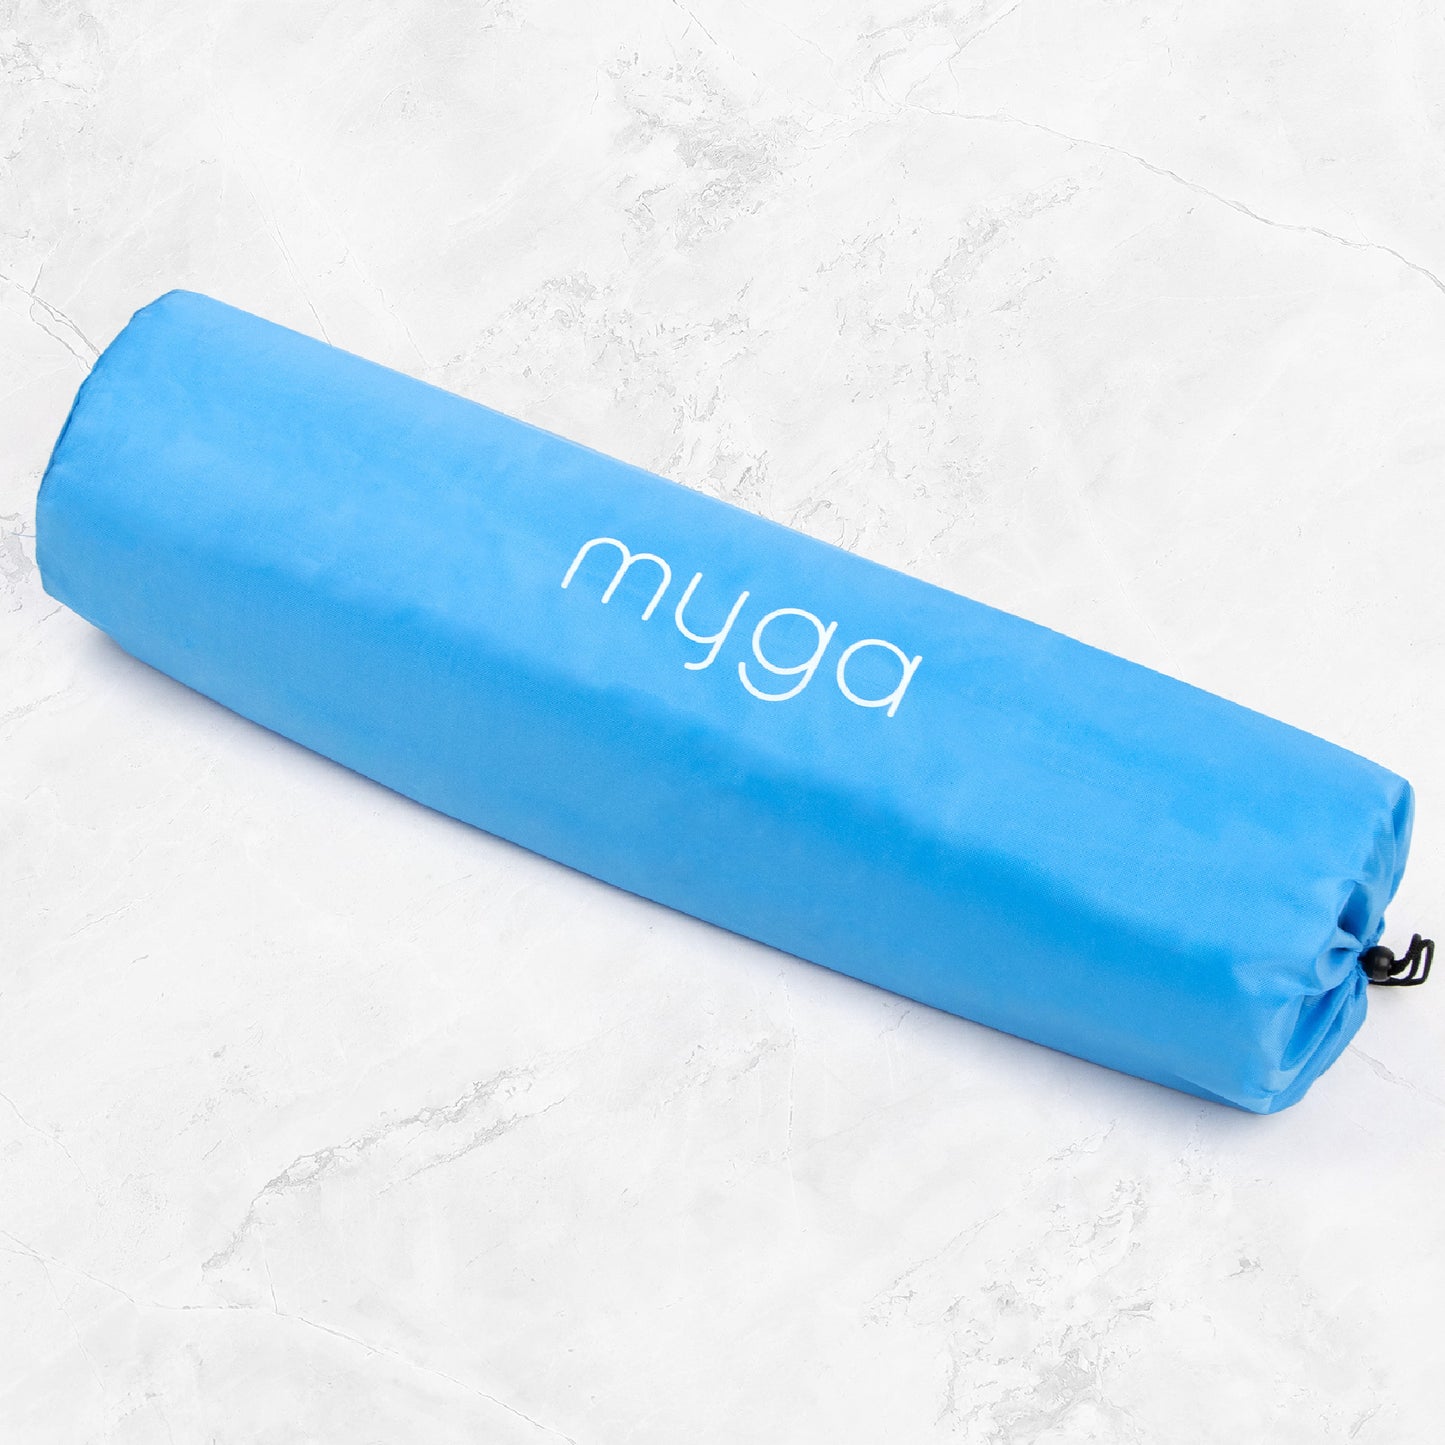 Yoga Mat Carry Bag - Azure